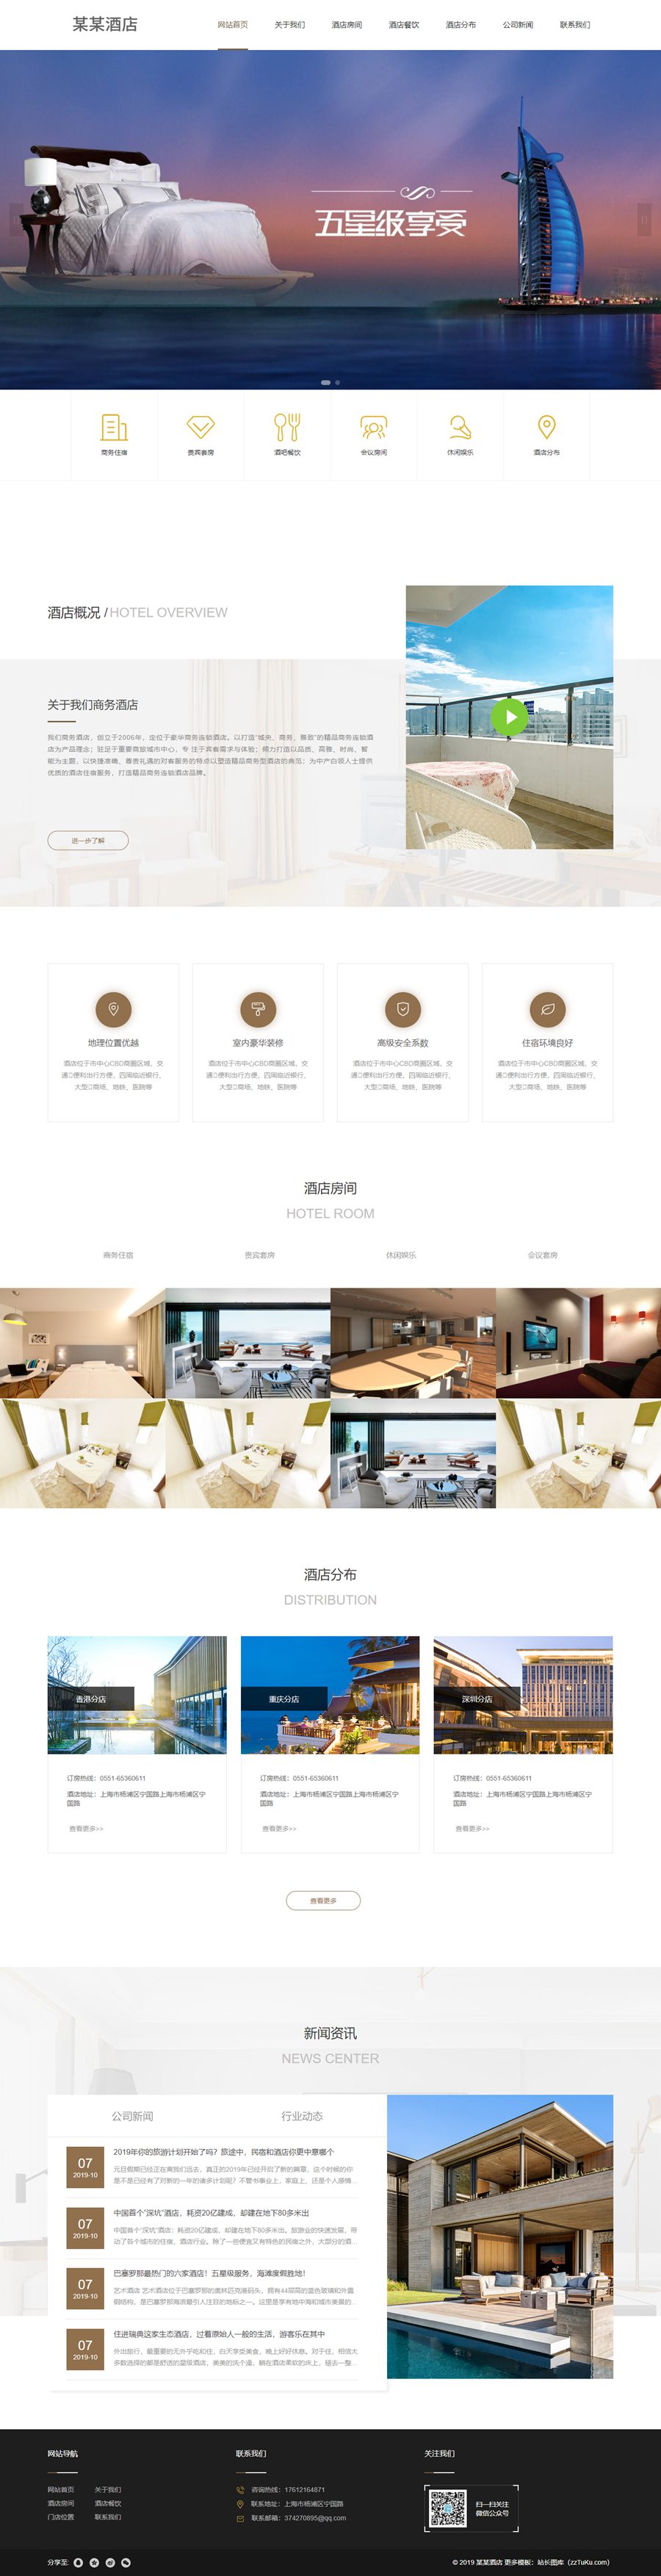 高端大气酒店展示网站HTML静态页面模板